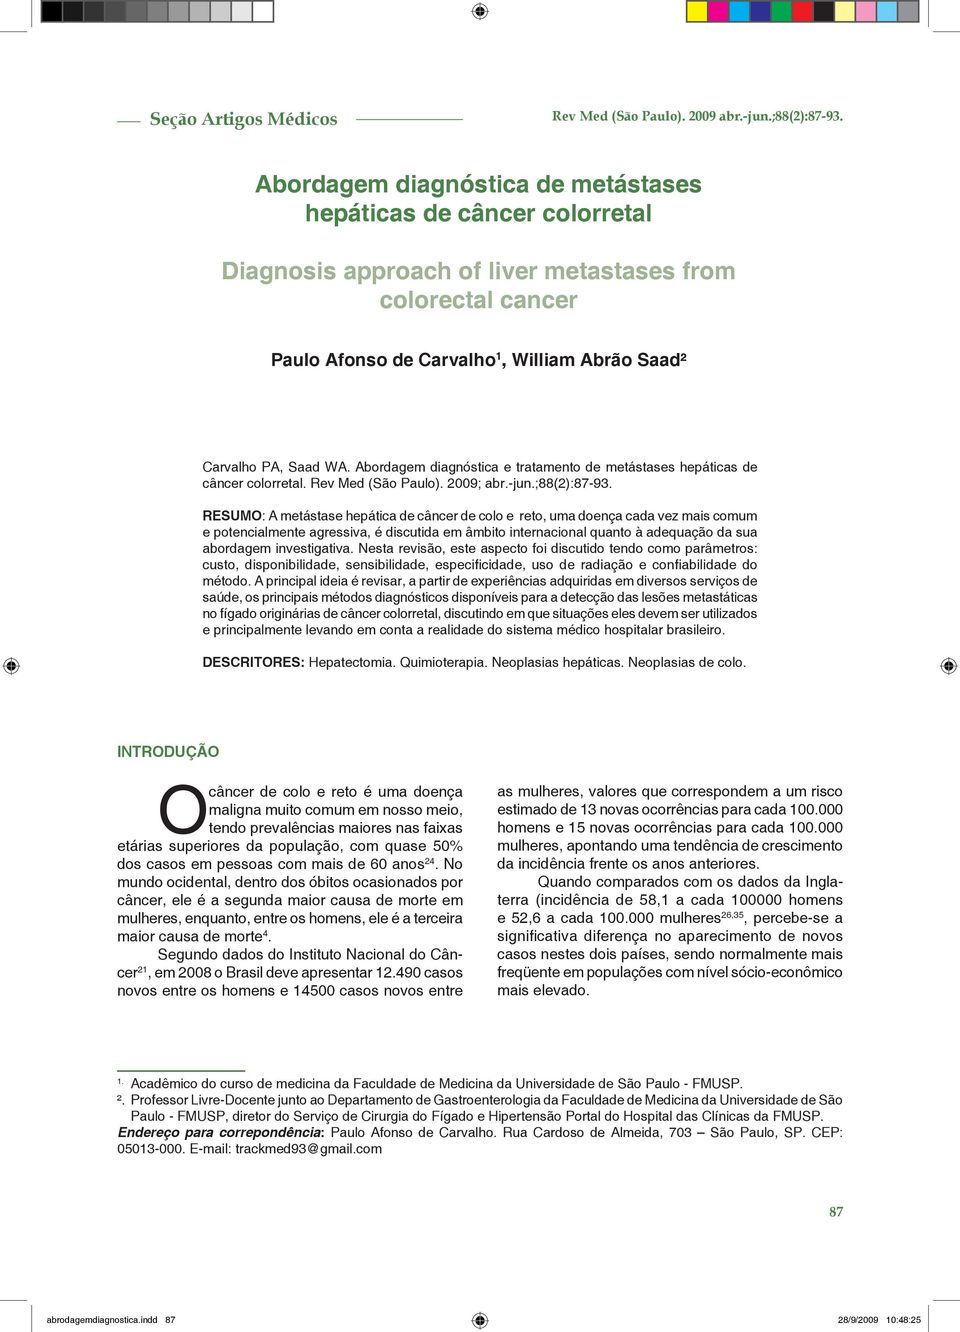 Abordagem diagnóstica e tratamento de metástases hepáticas de câncer colorretal. Rev Med (São Paulo). 2009; abr.-jun.;88(2):87-93.